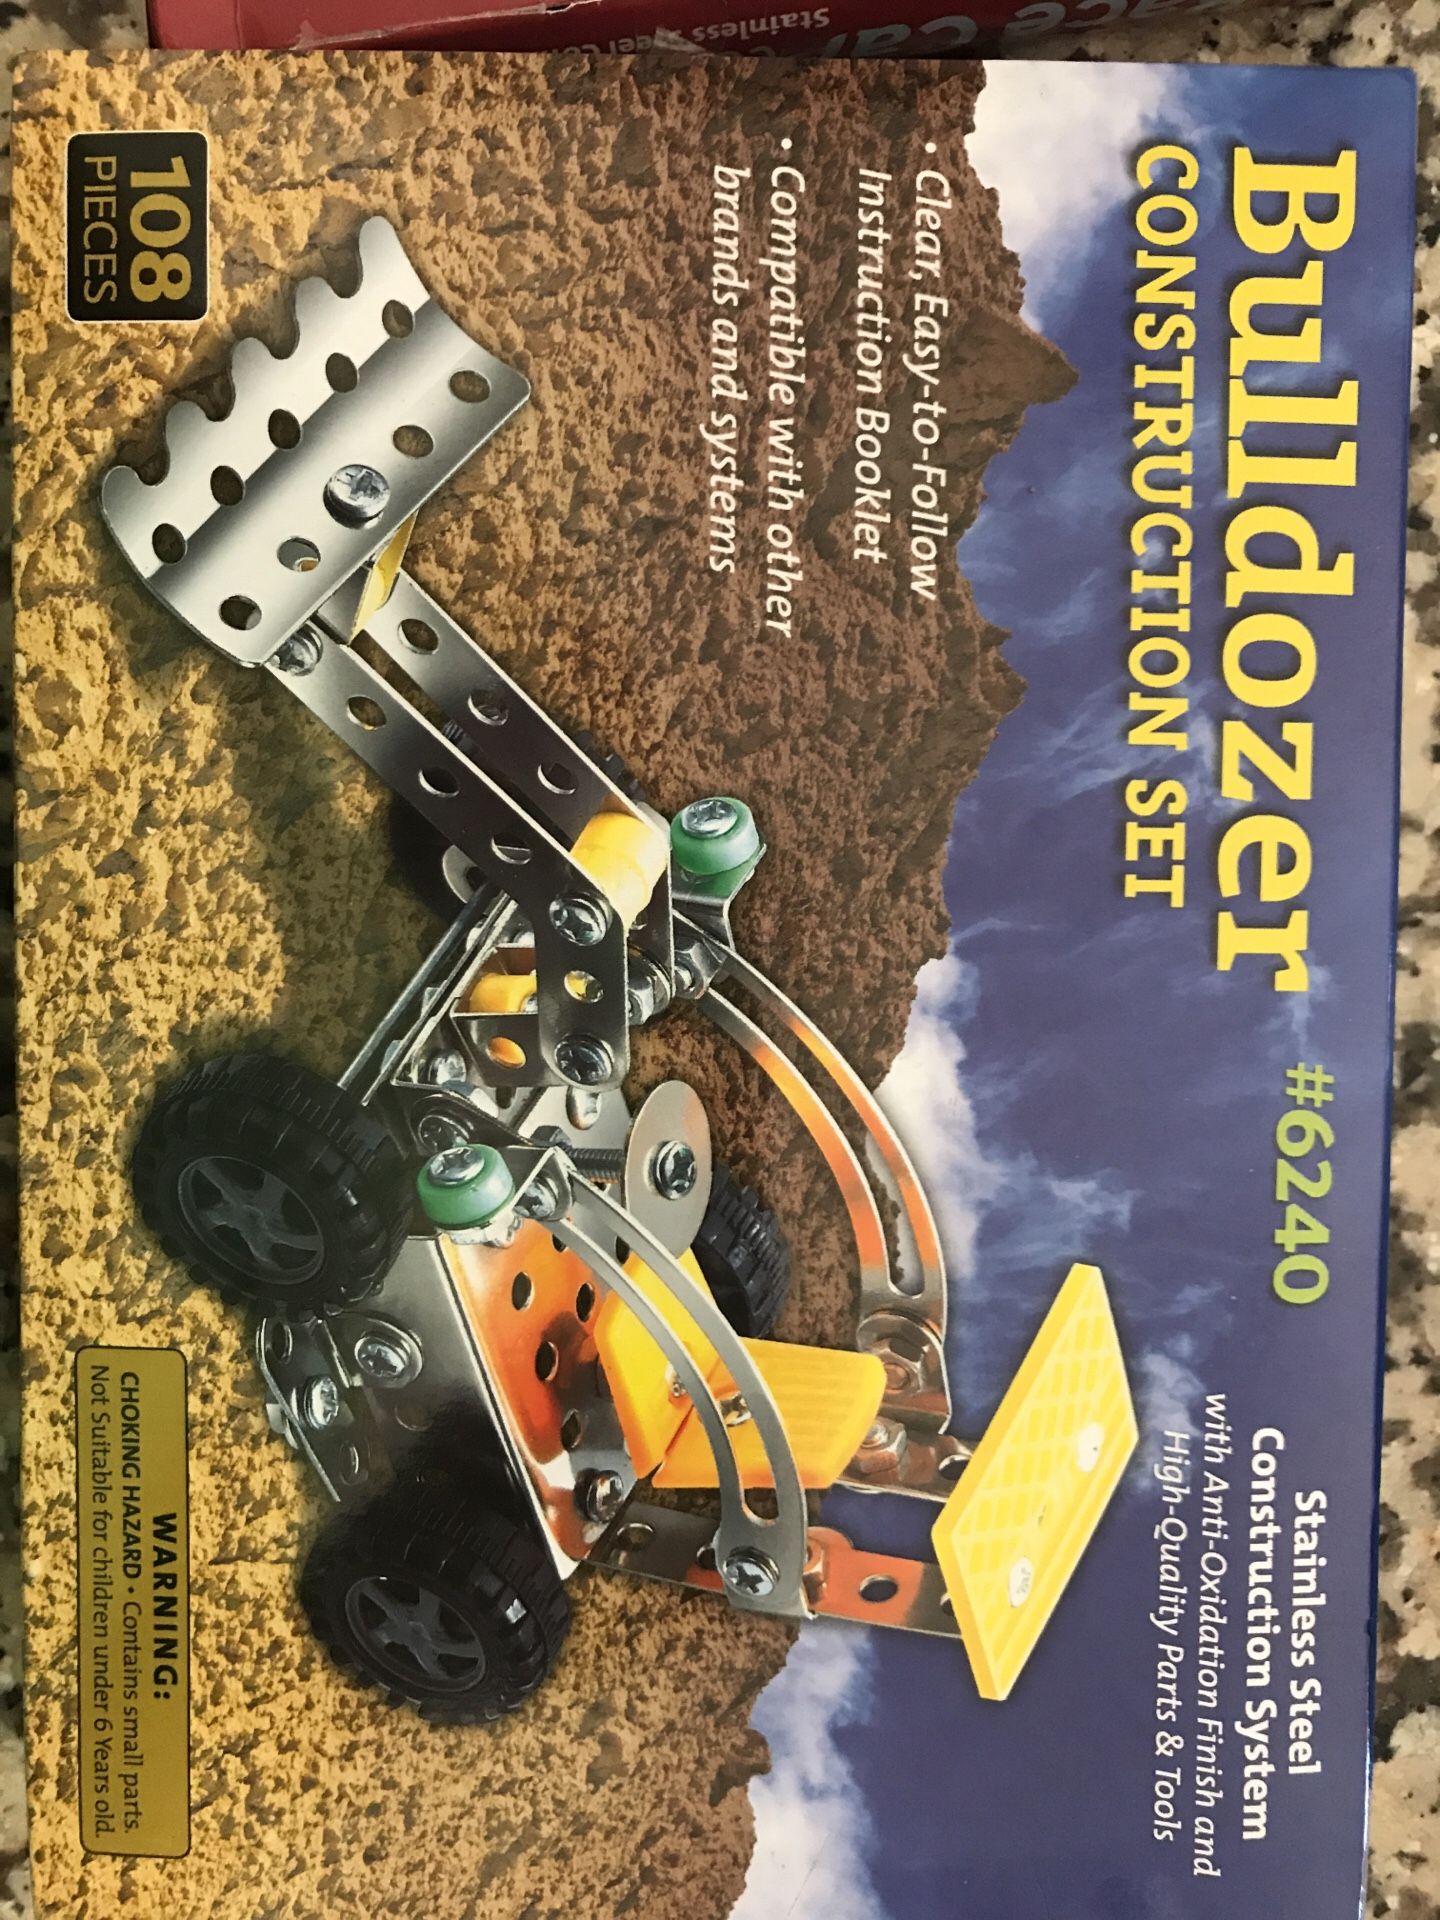 Bulldozer construction set